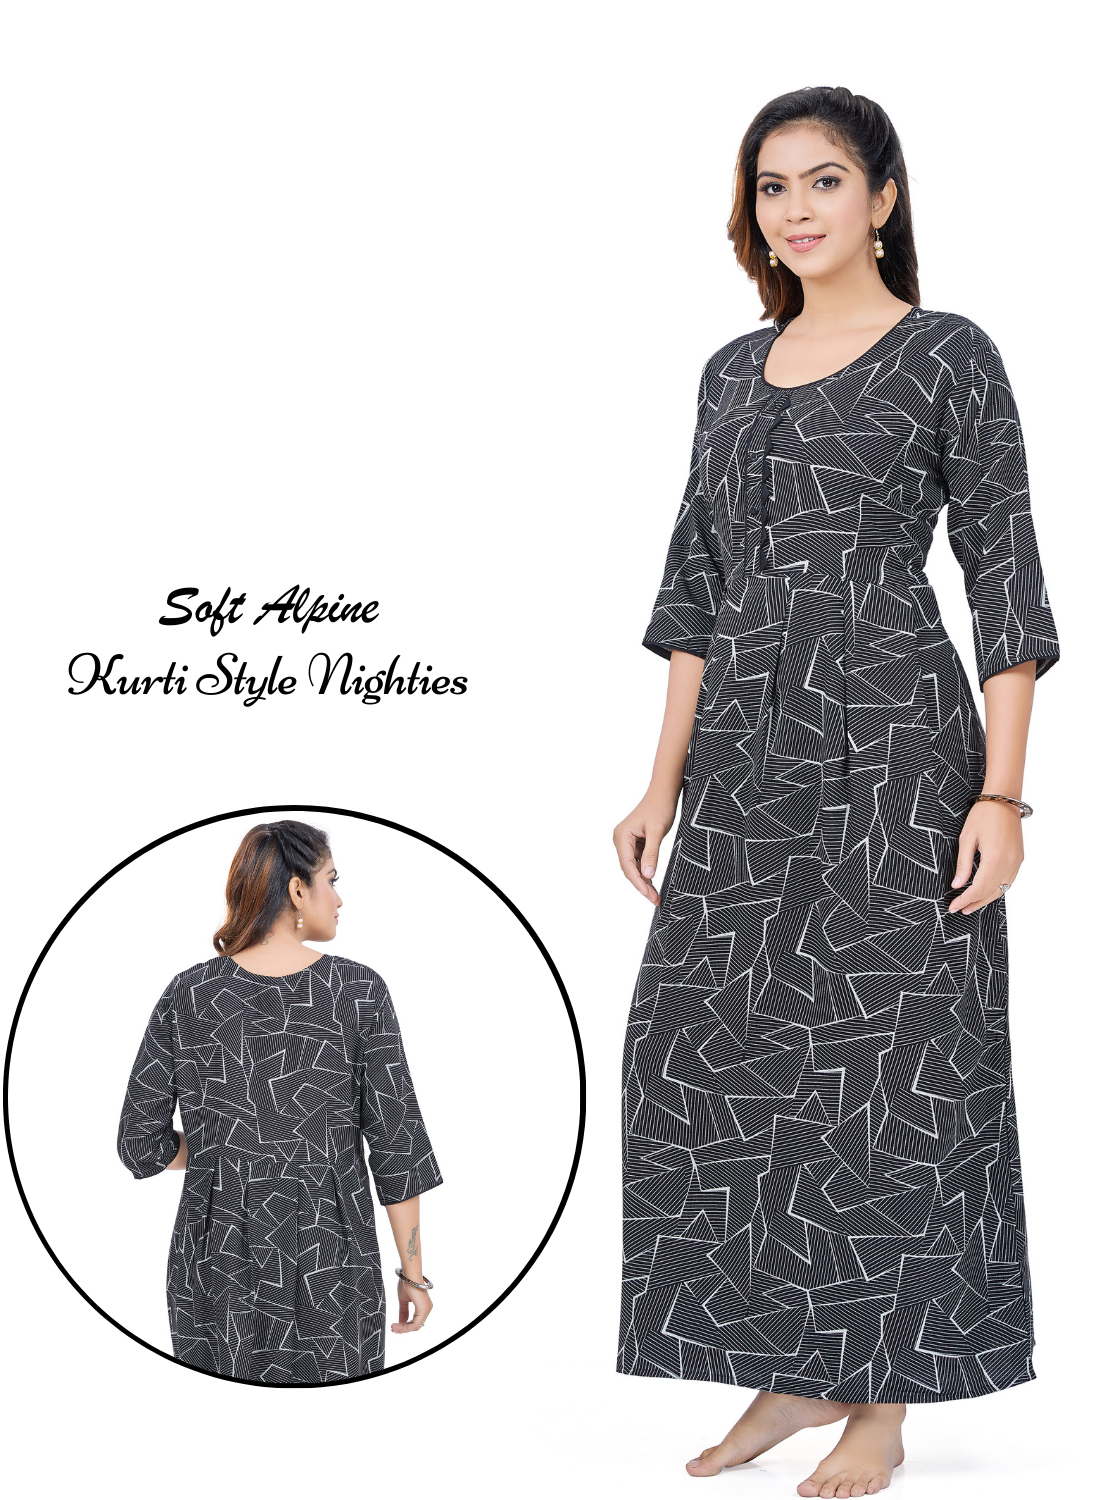 MANGAI Alpine KURTI Style | Beautiful Stylish KURTI Model | Fresh Collection's for Stylish Women's